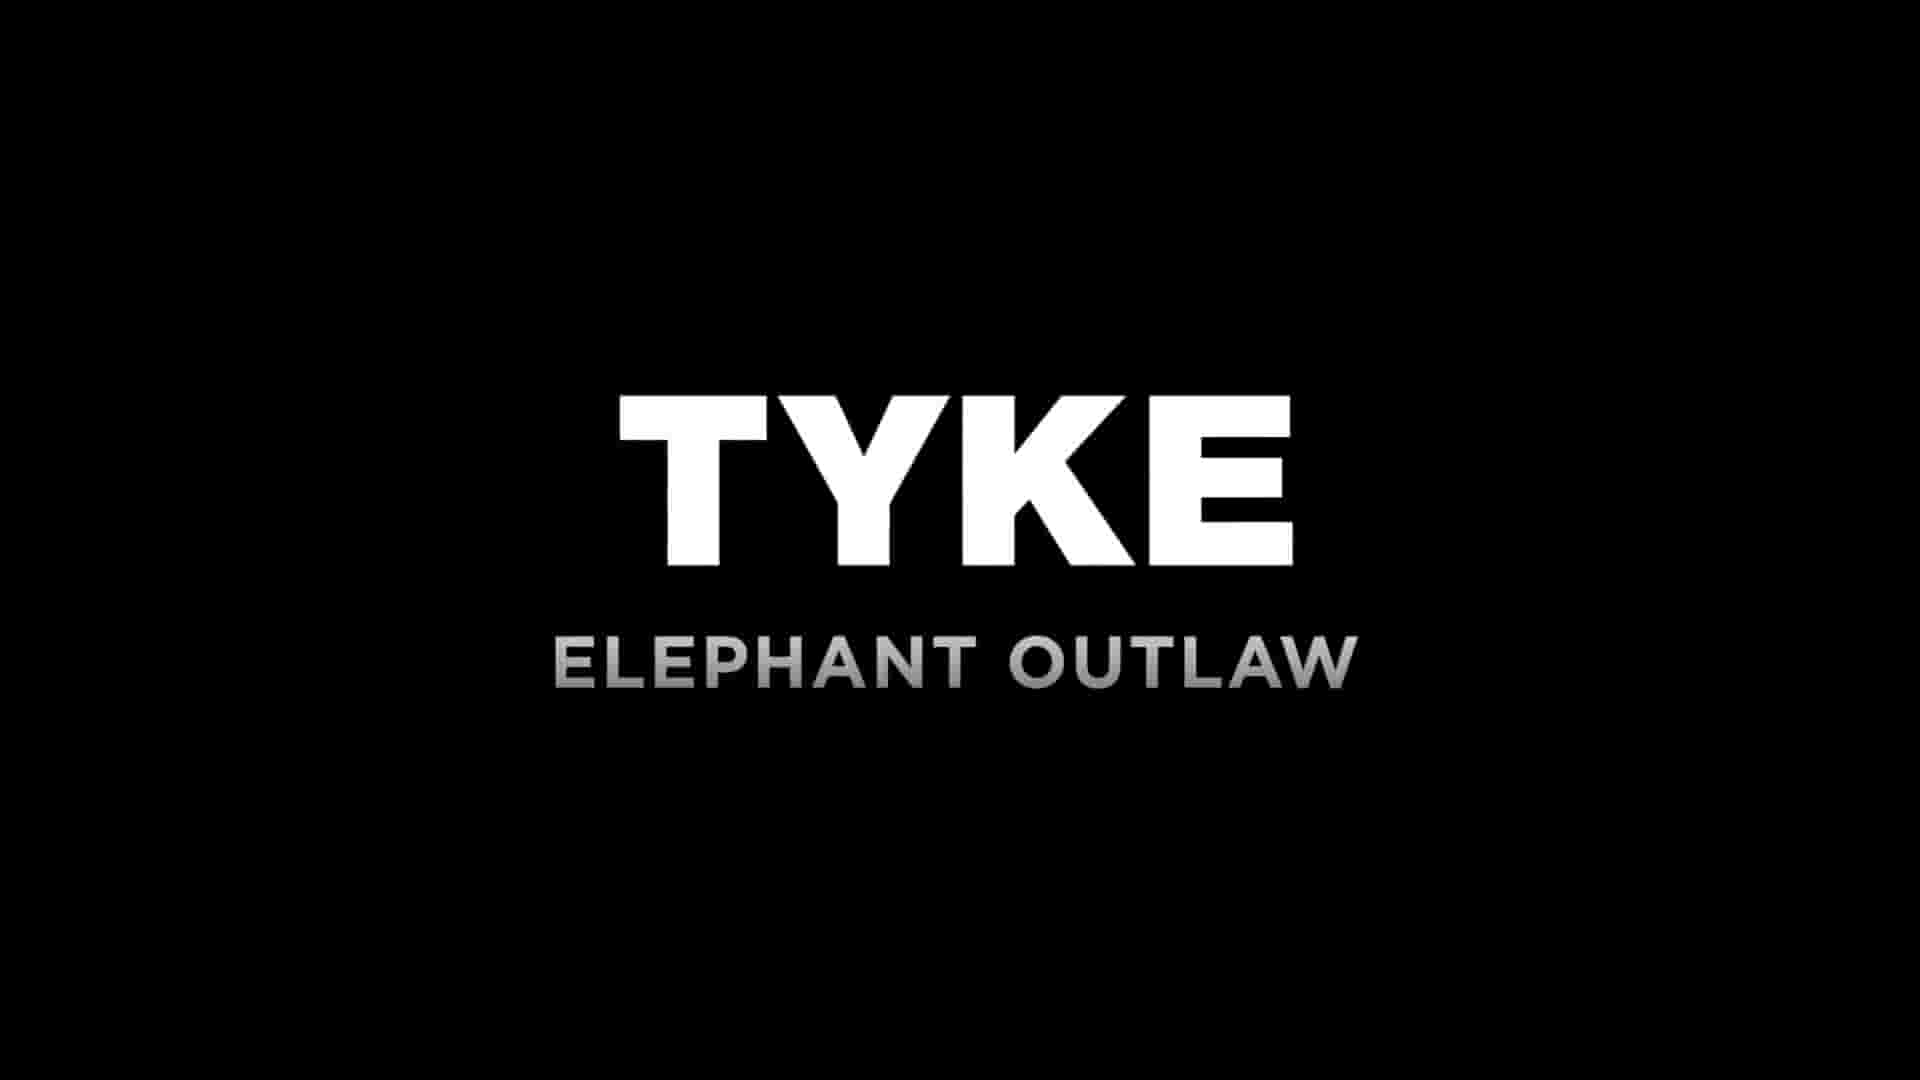 美国纪录片《迷途小象泰克 Tyke Elephant Outlaw 2015》全1集 英语内嵌中英多字幕 1080P高清纪录片